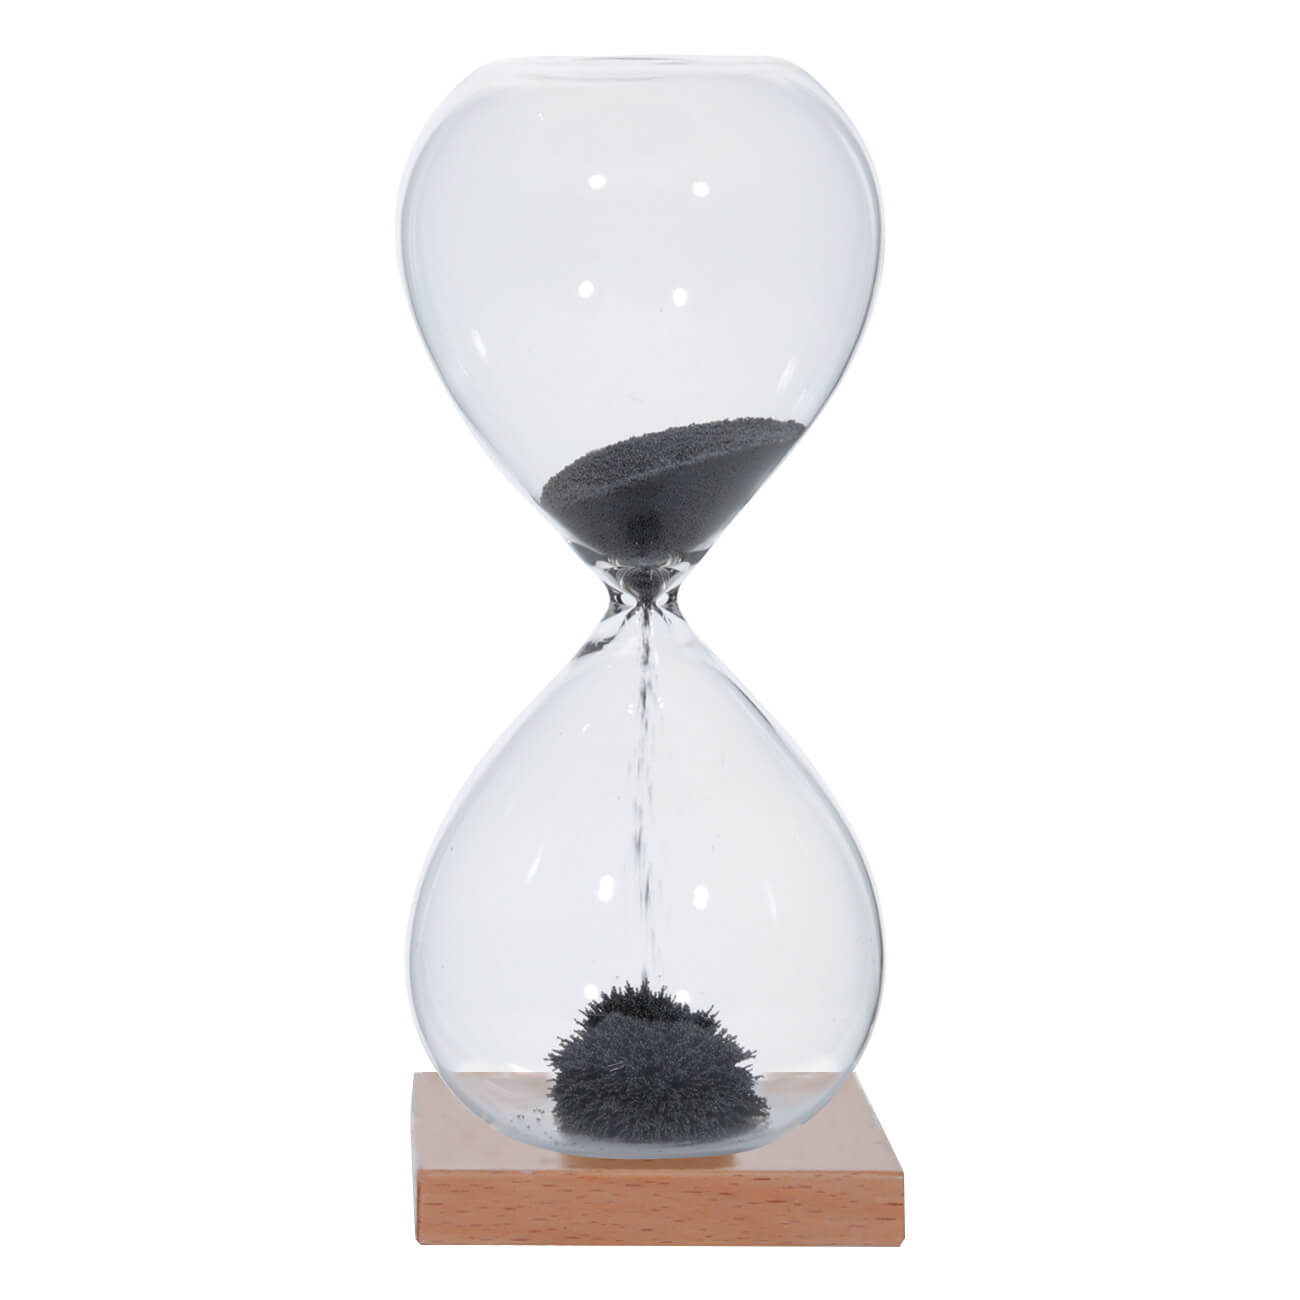 Часы песочные, 16 см, 1 минута, магнитные, на подставке, стекло/дерево, серые, Sand time игрушка сортер 22 см развивающая дерево часы kiddy